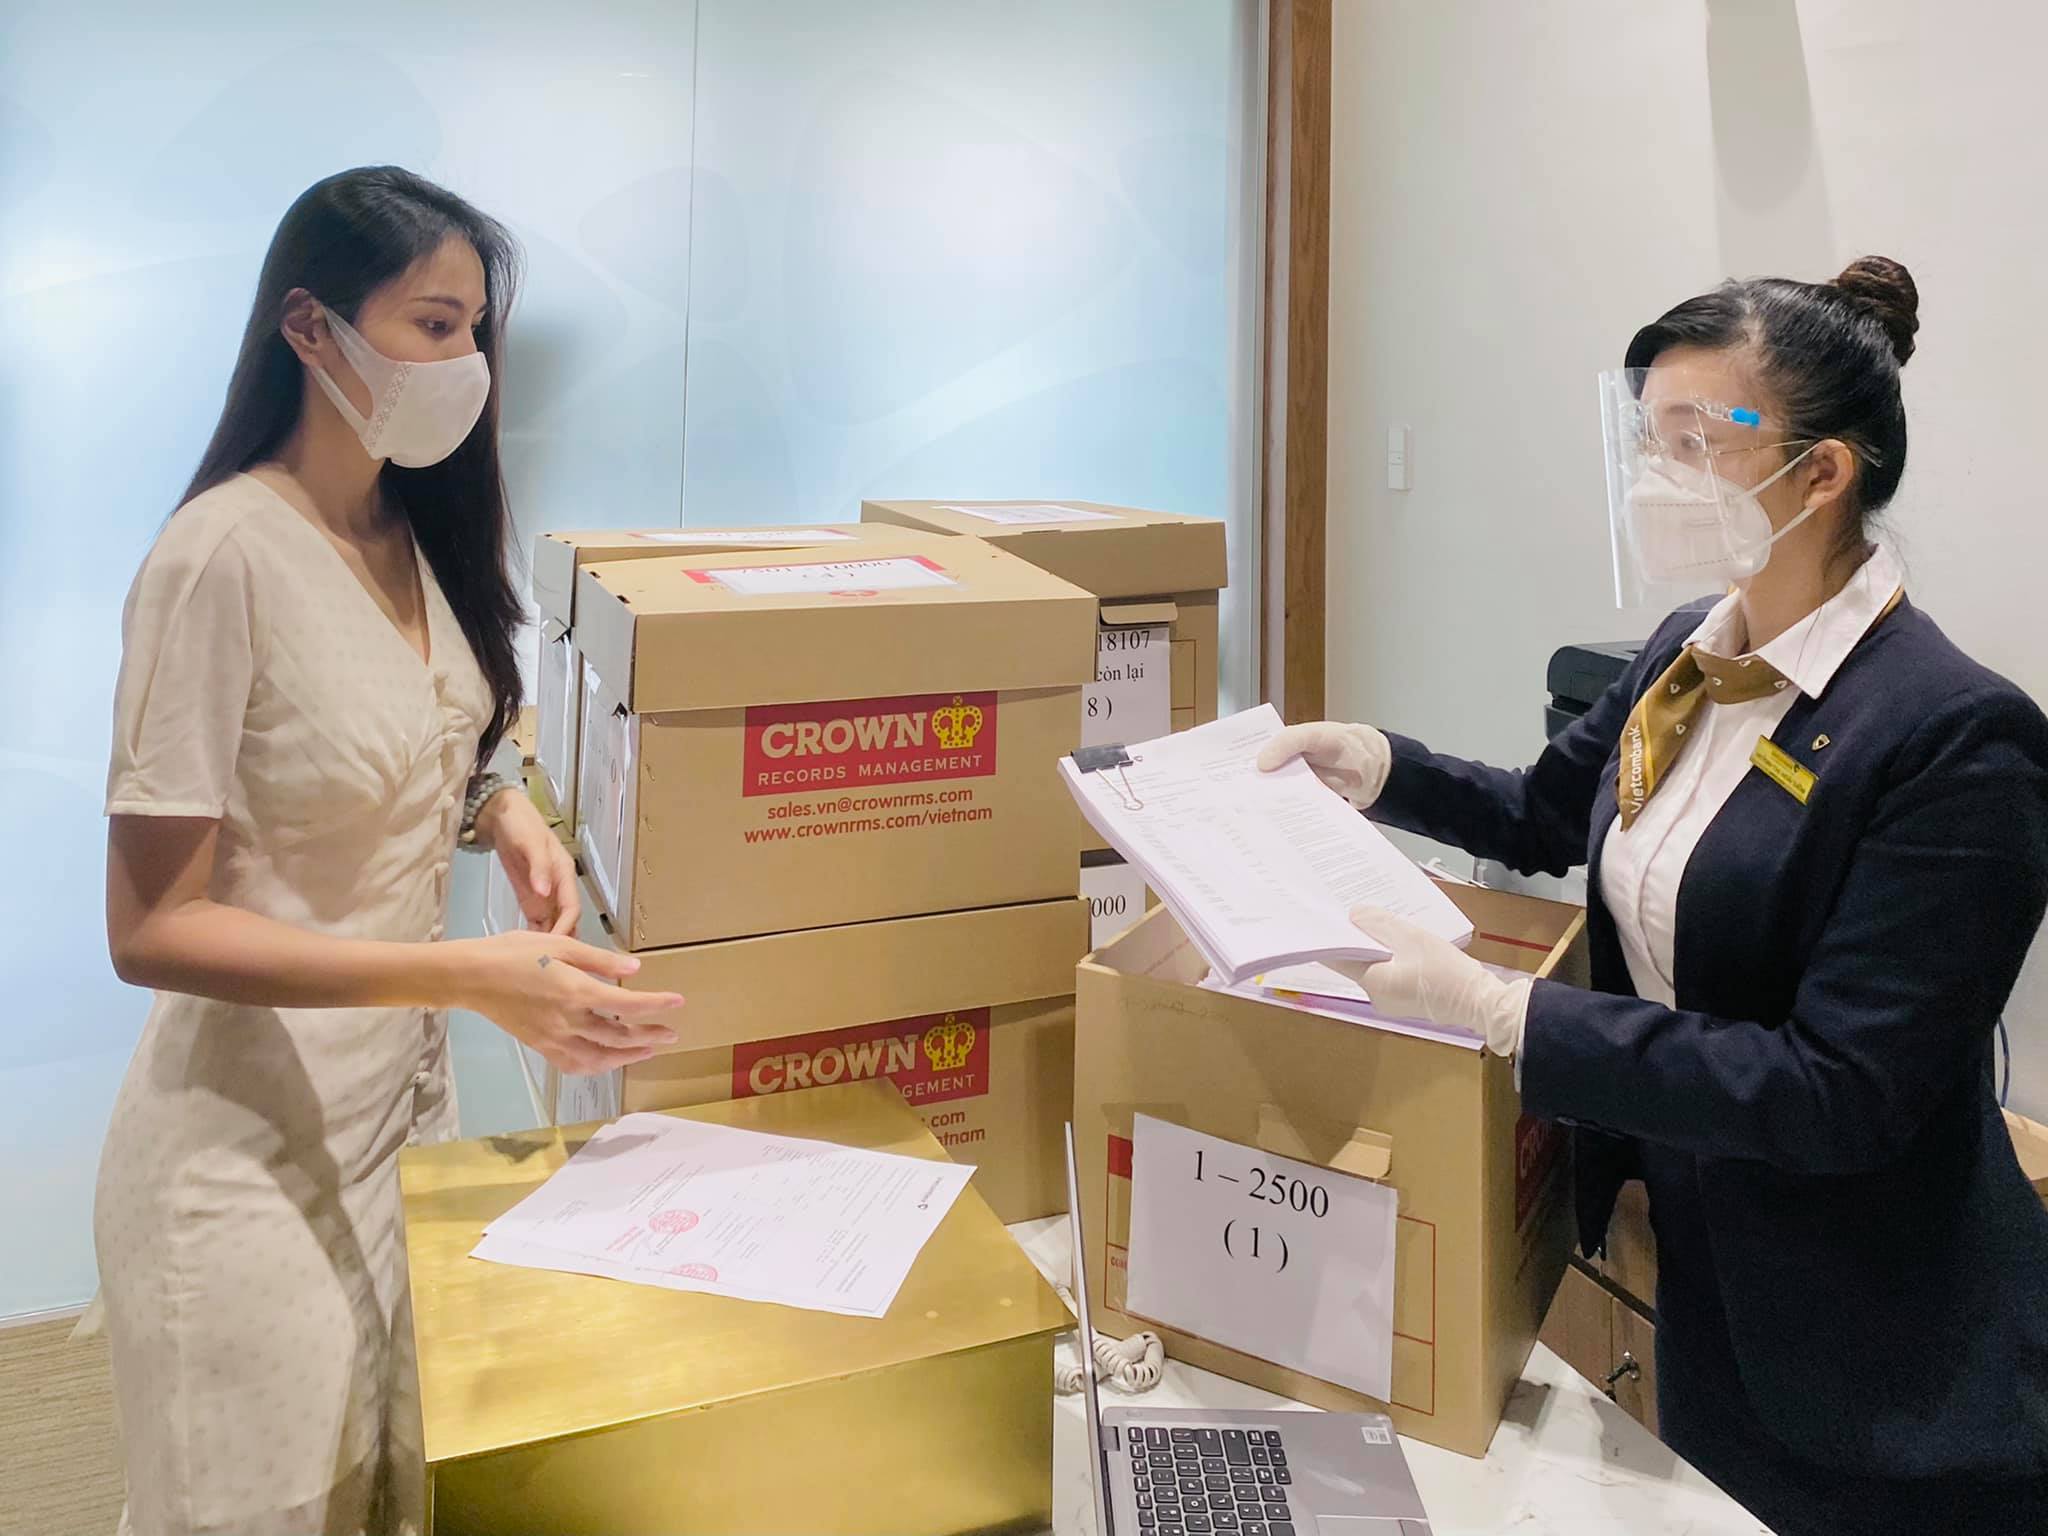 Cận cảnh chồng thùng giấy chứa 18.000 tờ sao kê 177 tỷ kêu gọi cứu trợ miền Trung của vợ chồng Thuỷ Tiên - Công Vinh!